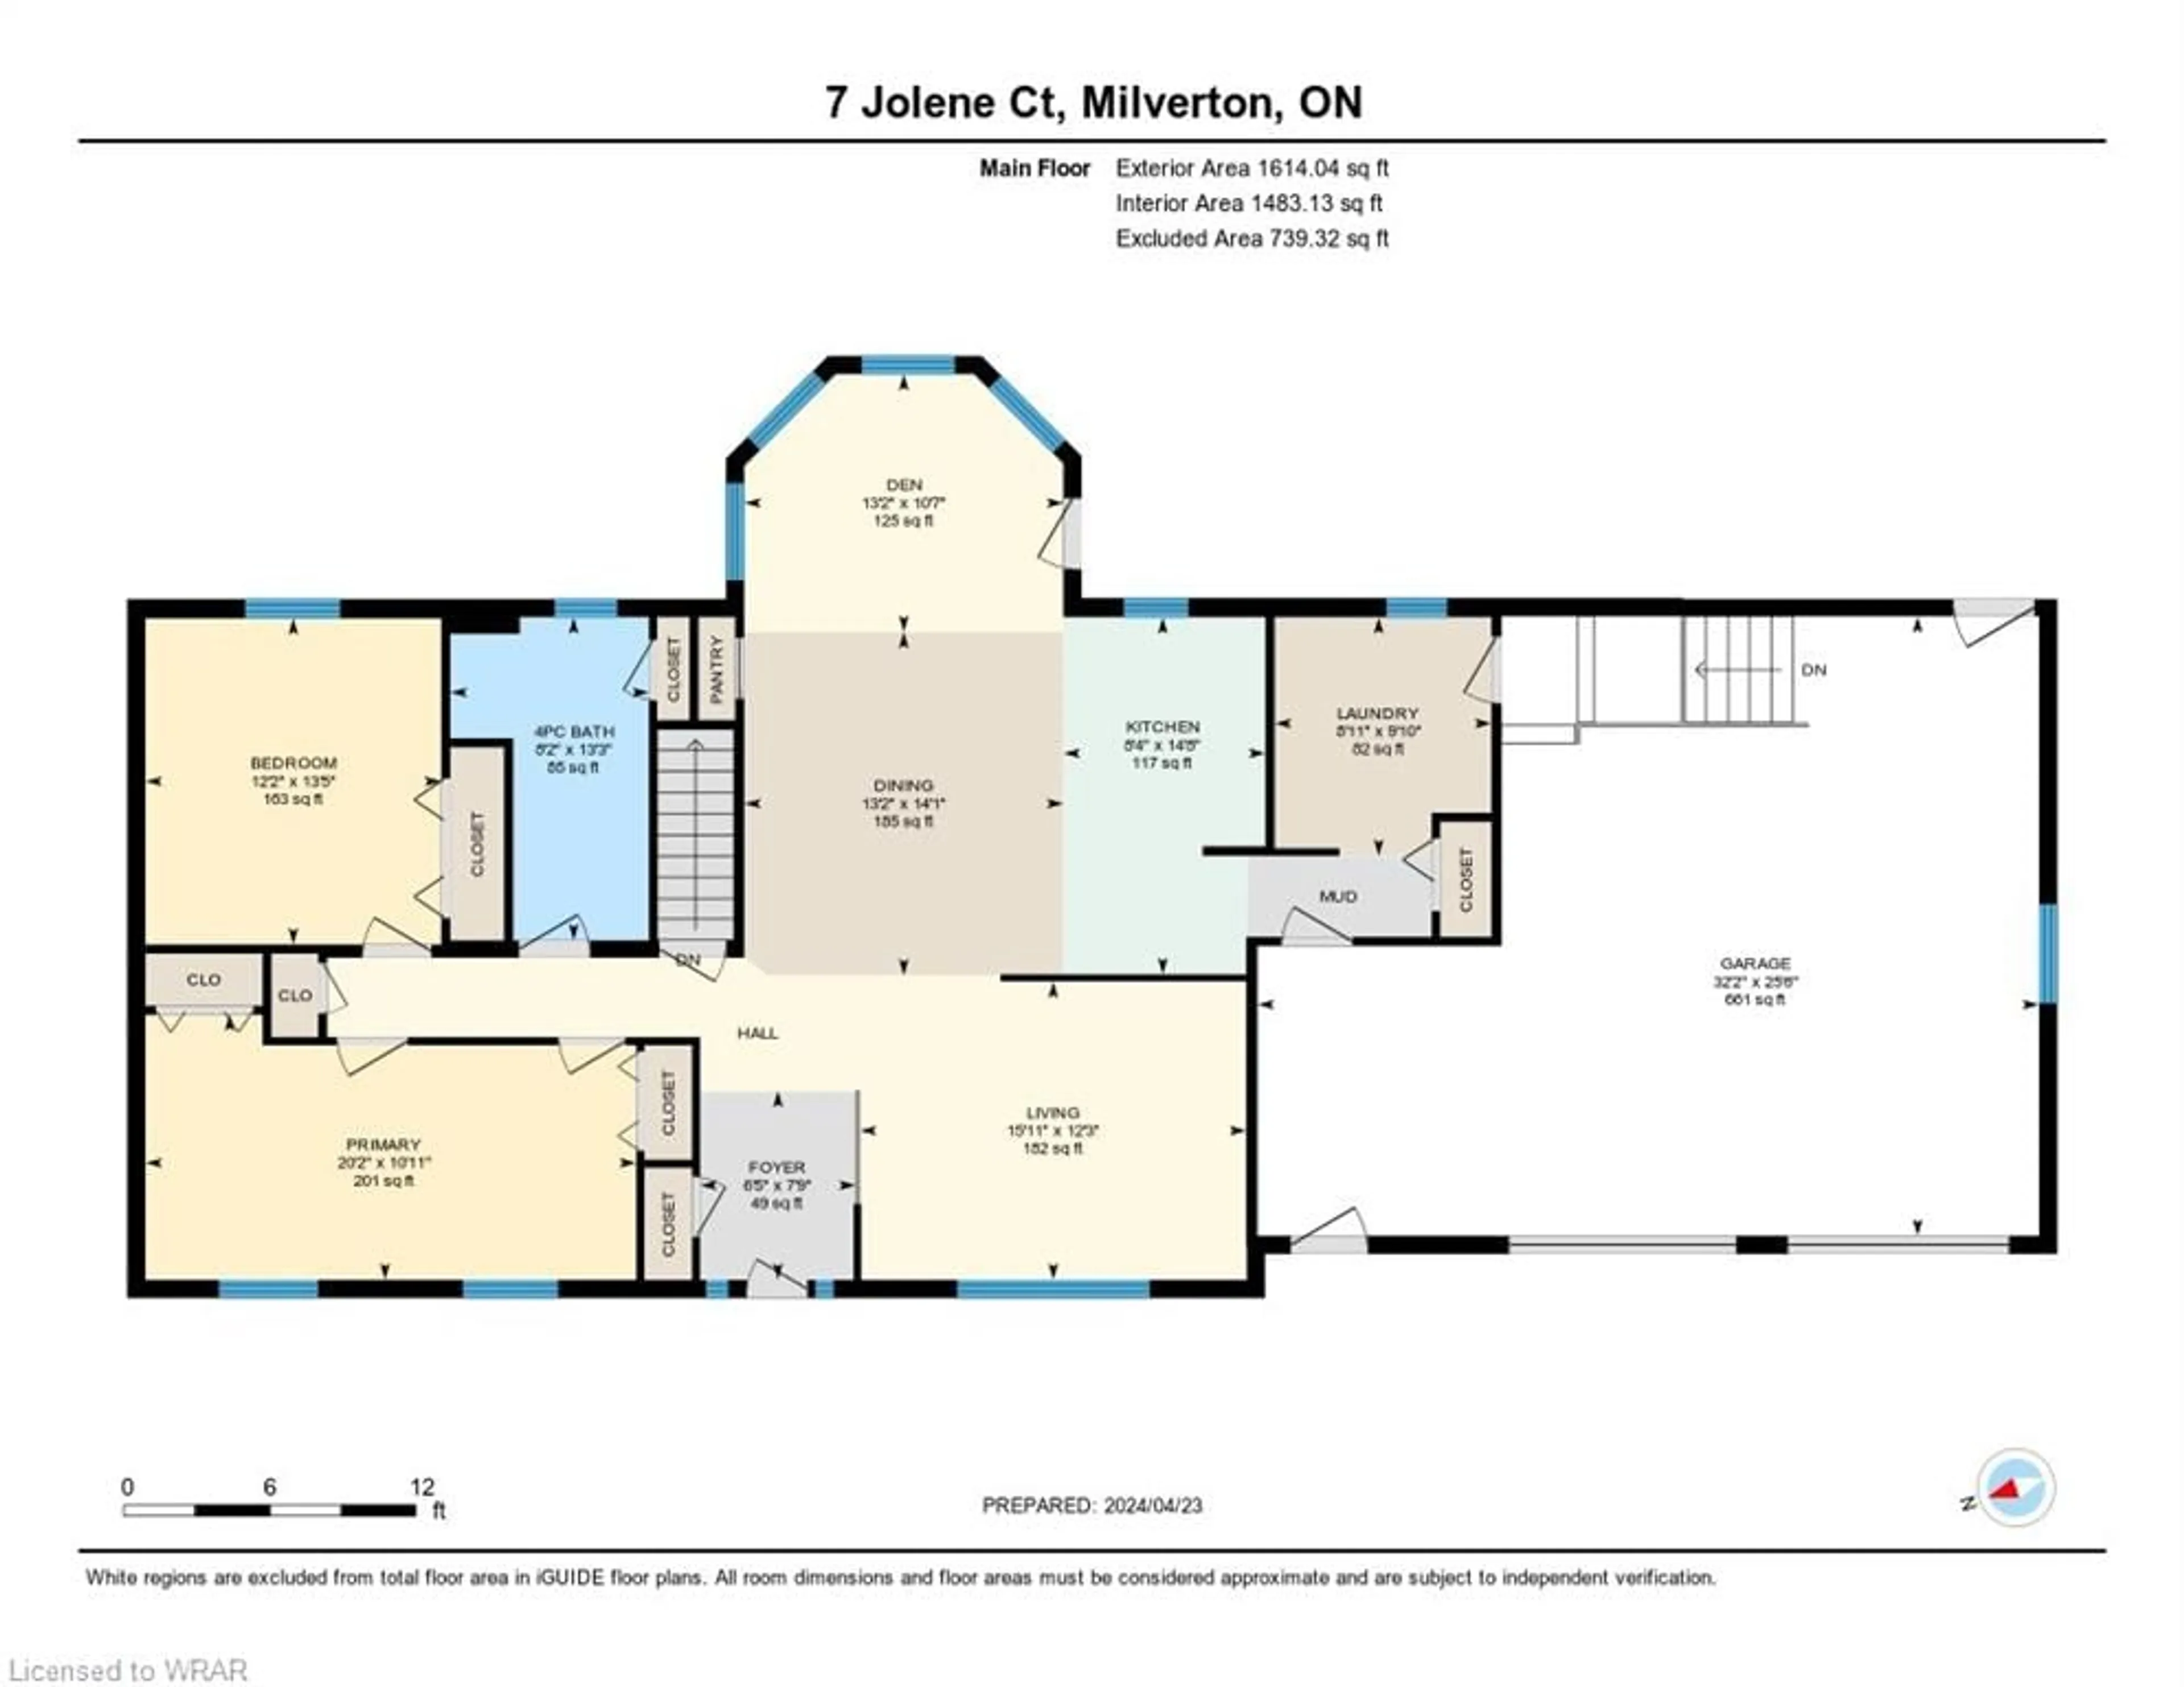 Floor plan for 7 Jolene Crt, Milverton Ontario N0K 1M0